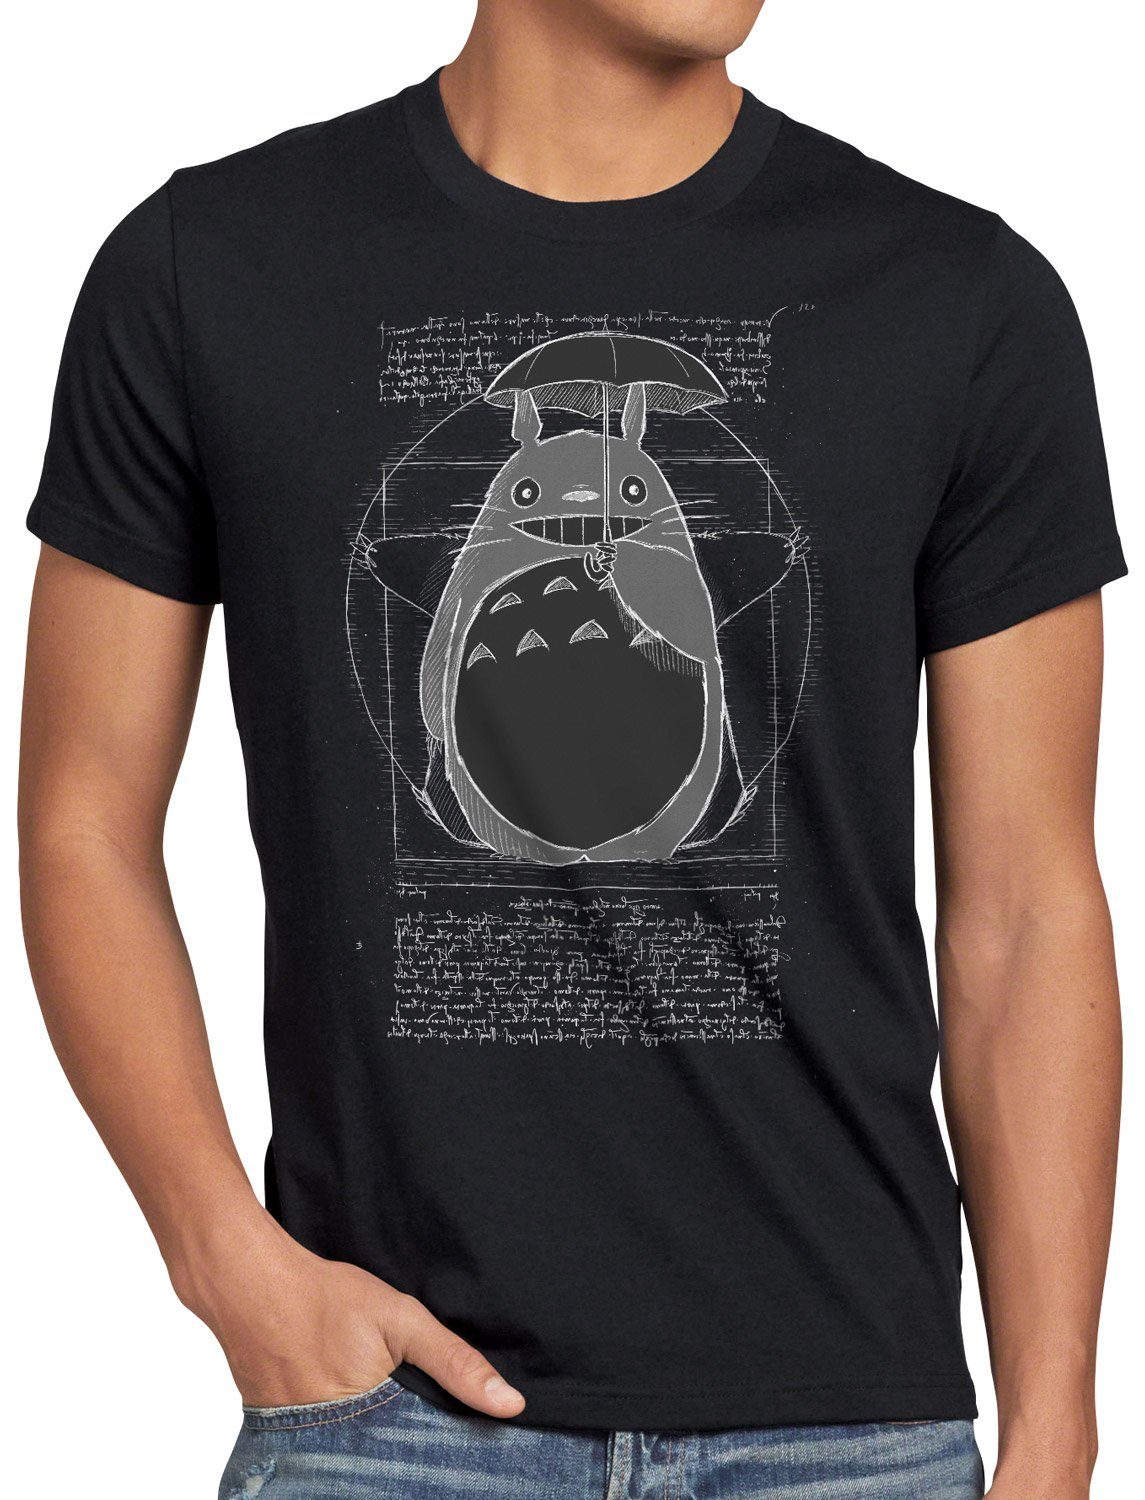 Herren schwarz Print-Shirt mein style3 no Vitruvianischer tonari Totoro neko anime nachbar T-Shirt